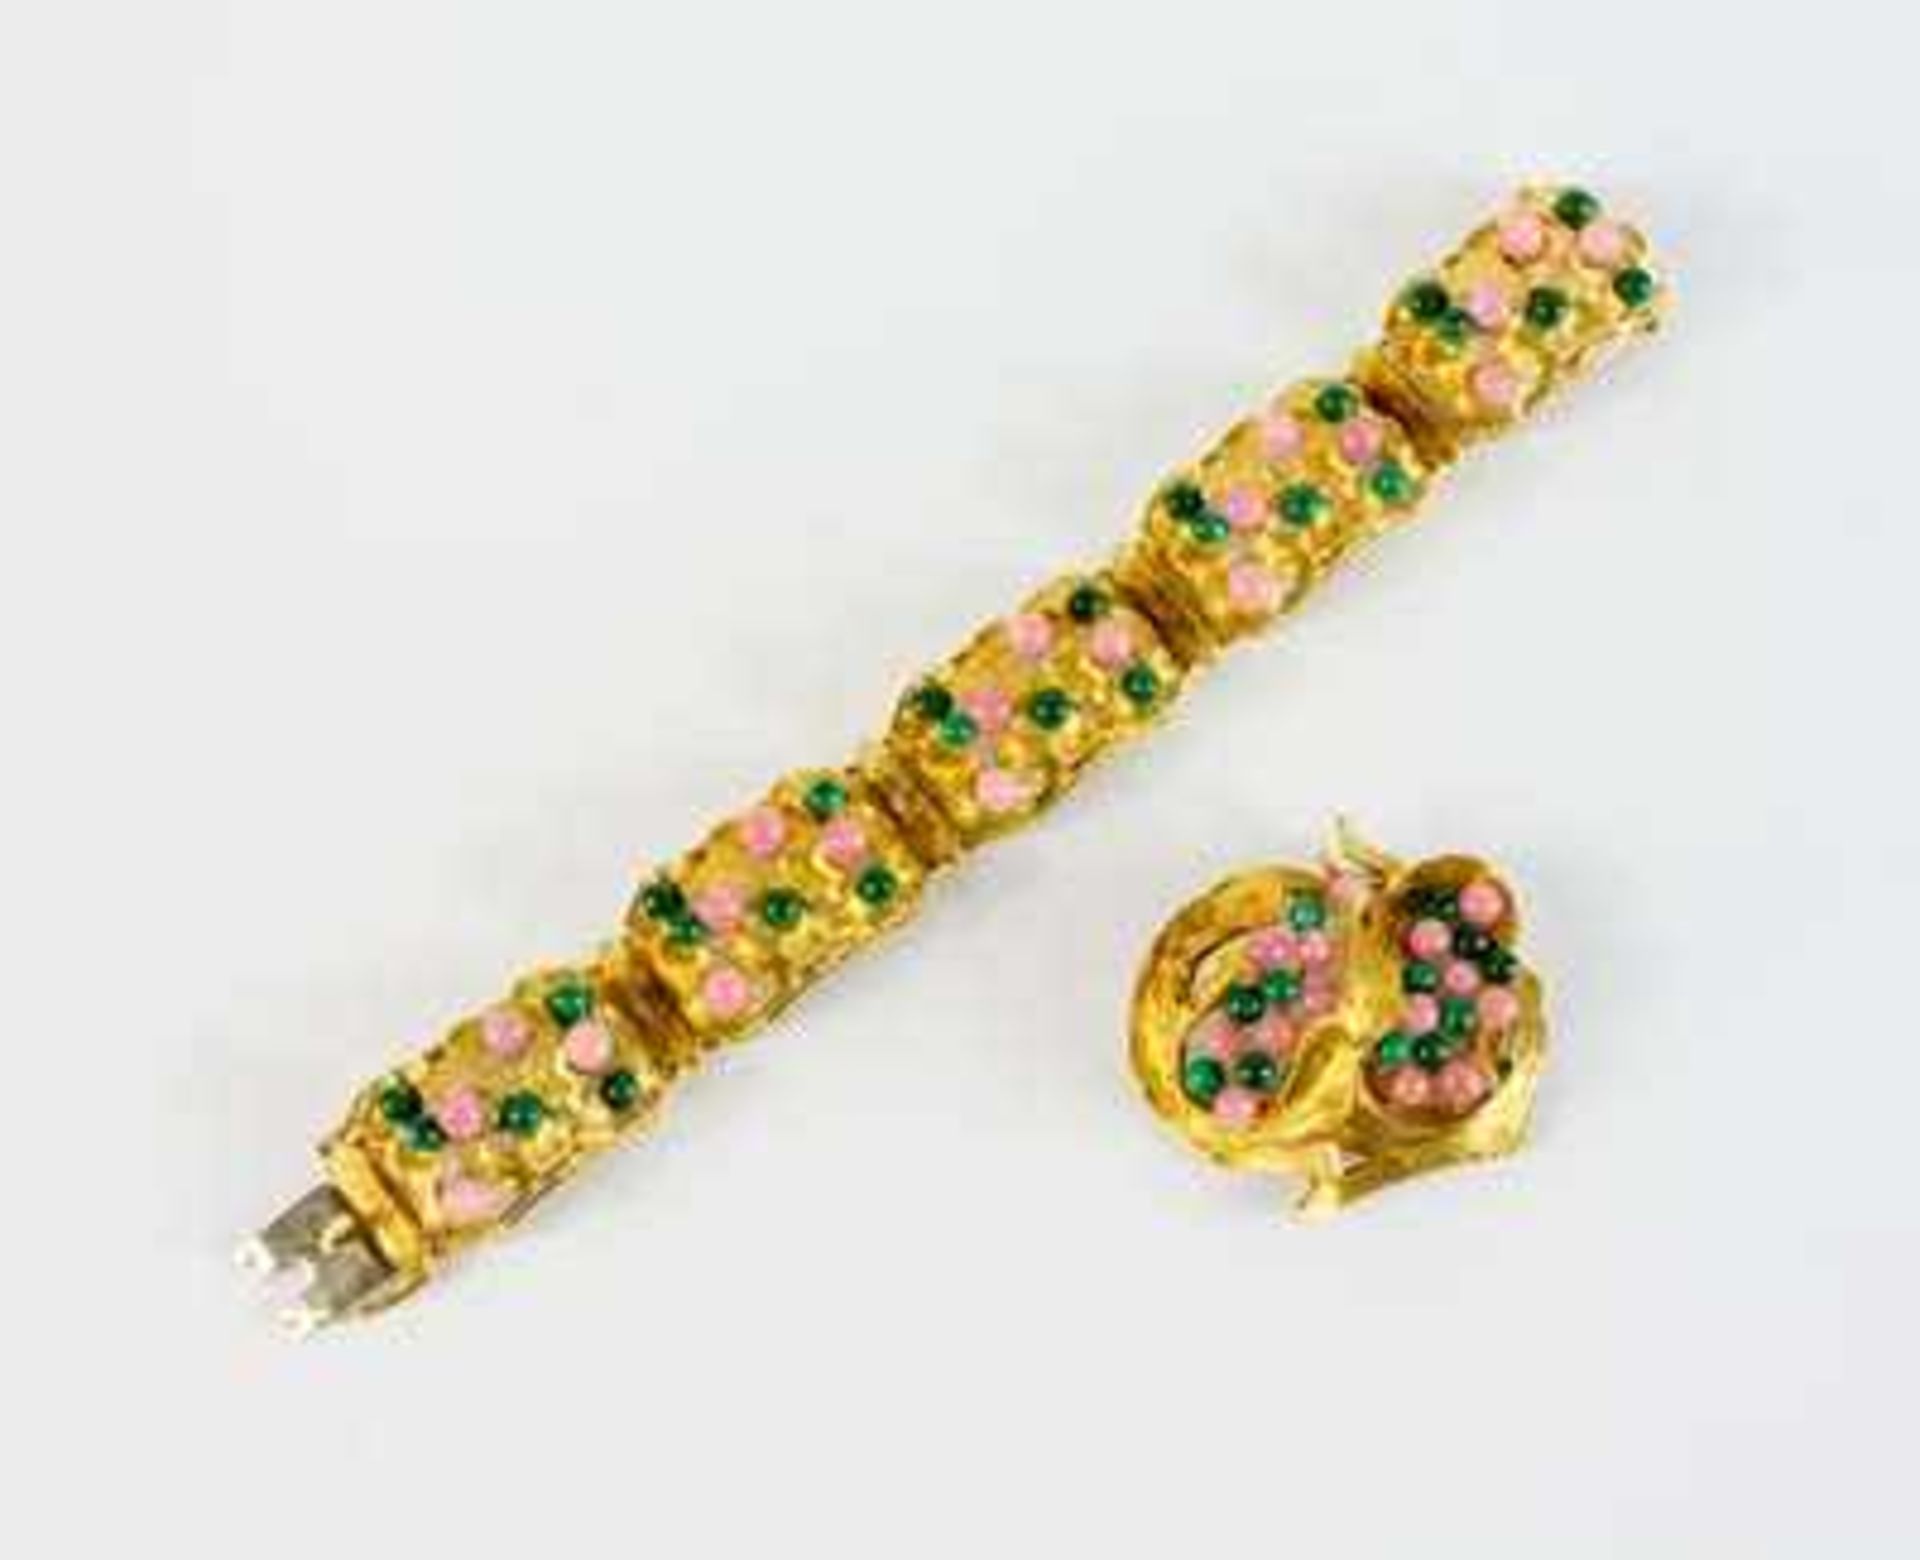 Armband und Brosche Handarbeit, 750 Gelbgold, reich besetzt mit Malachit- und Rosenquarzperlen,